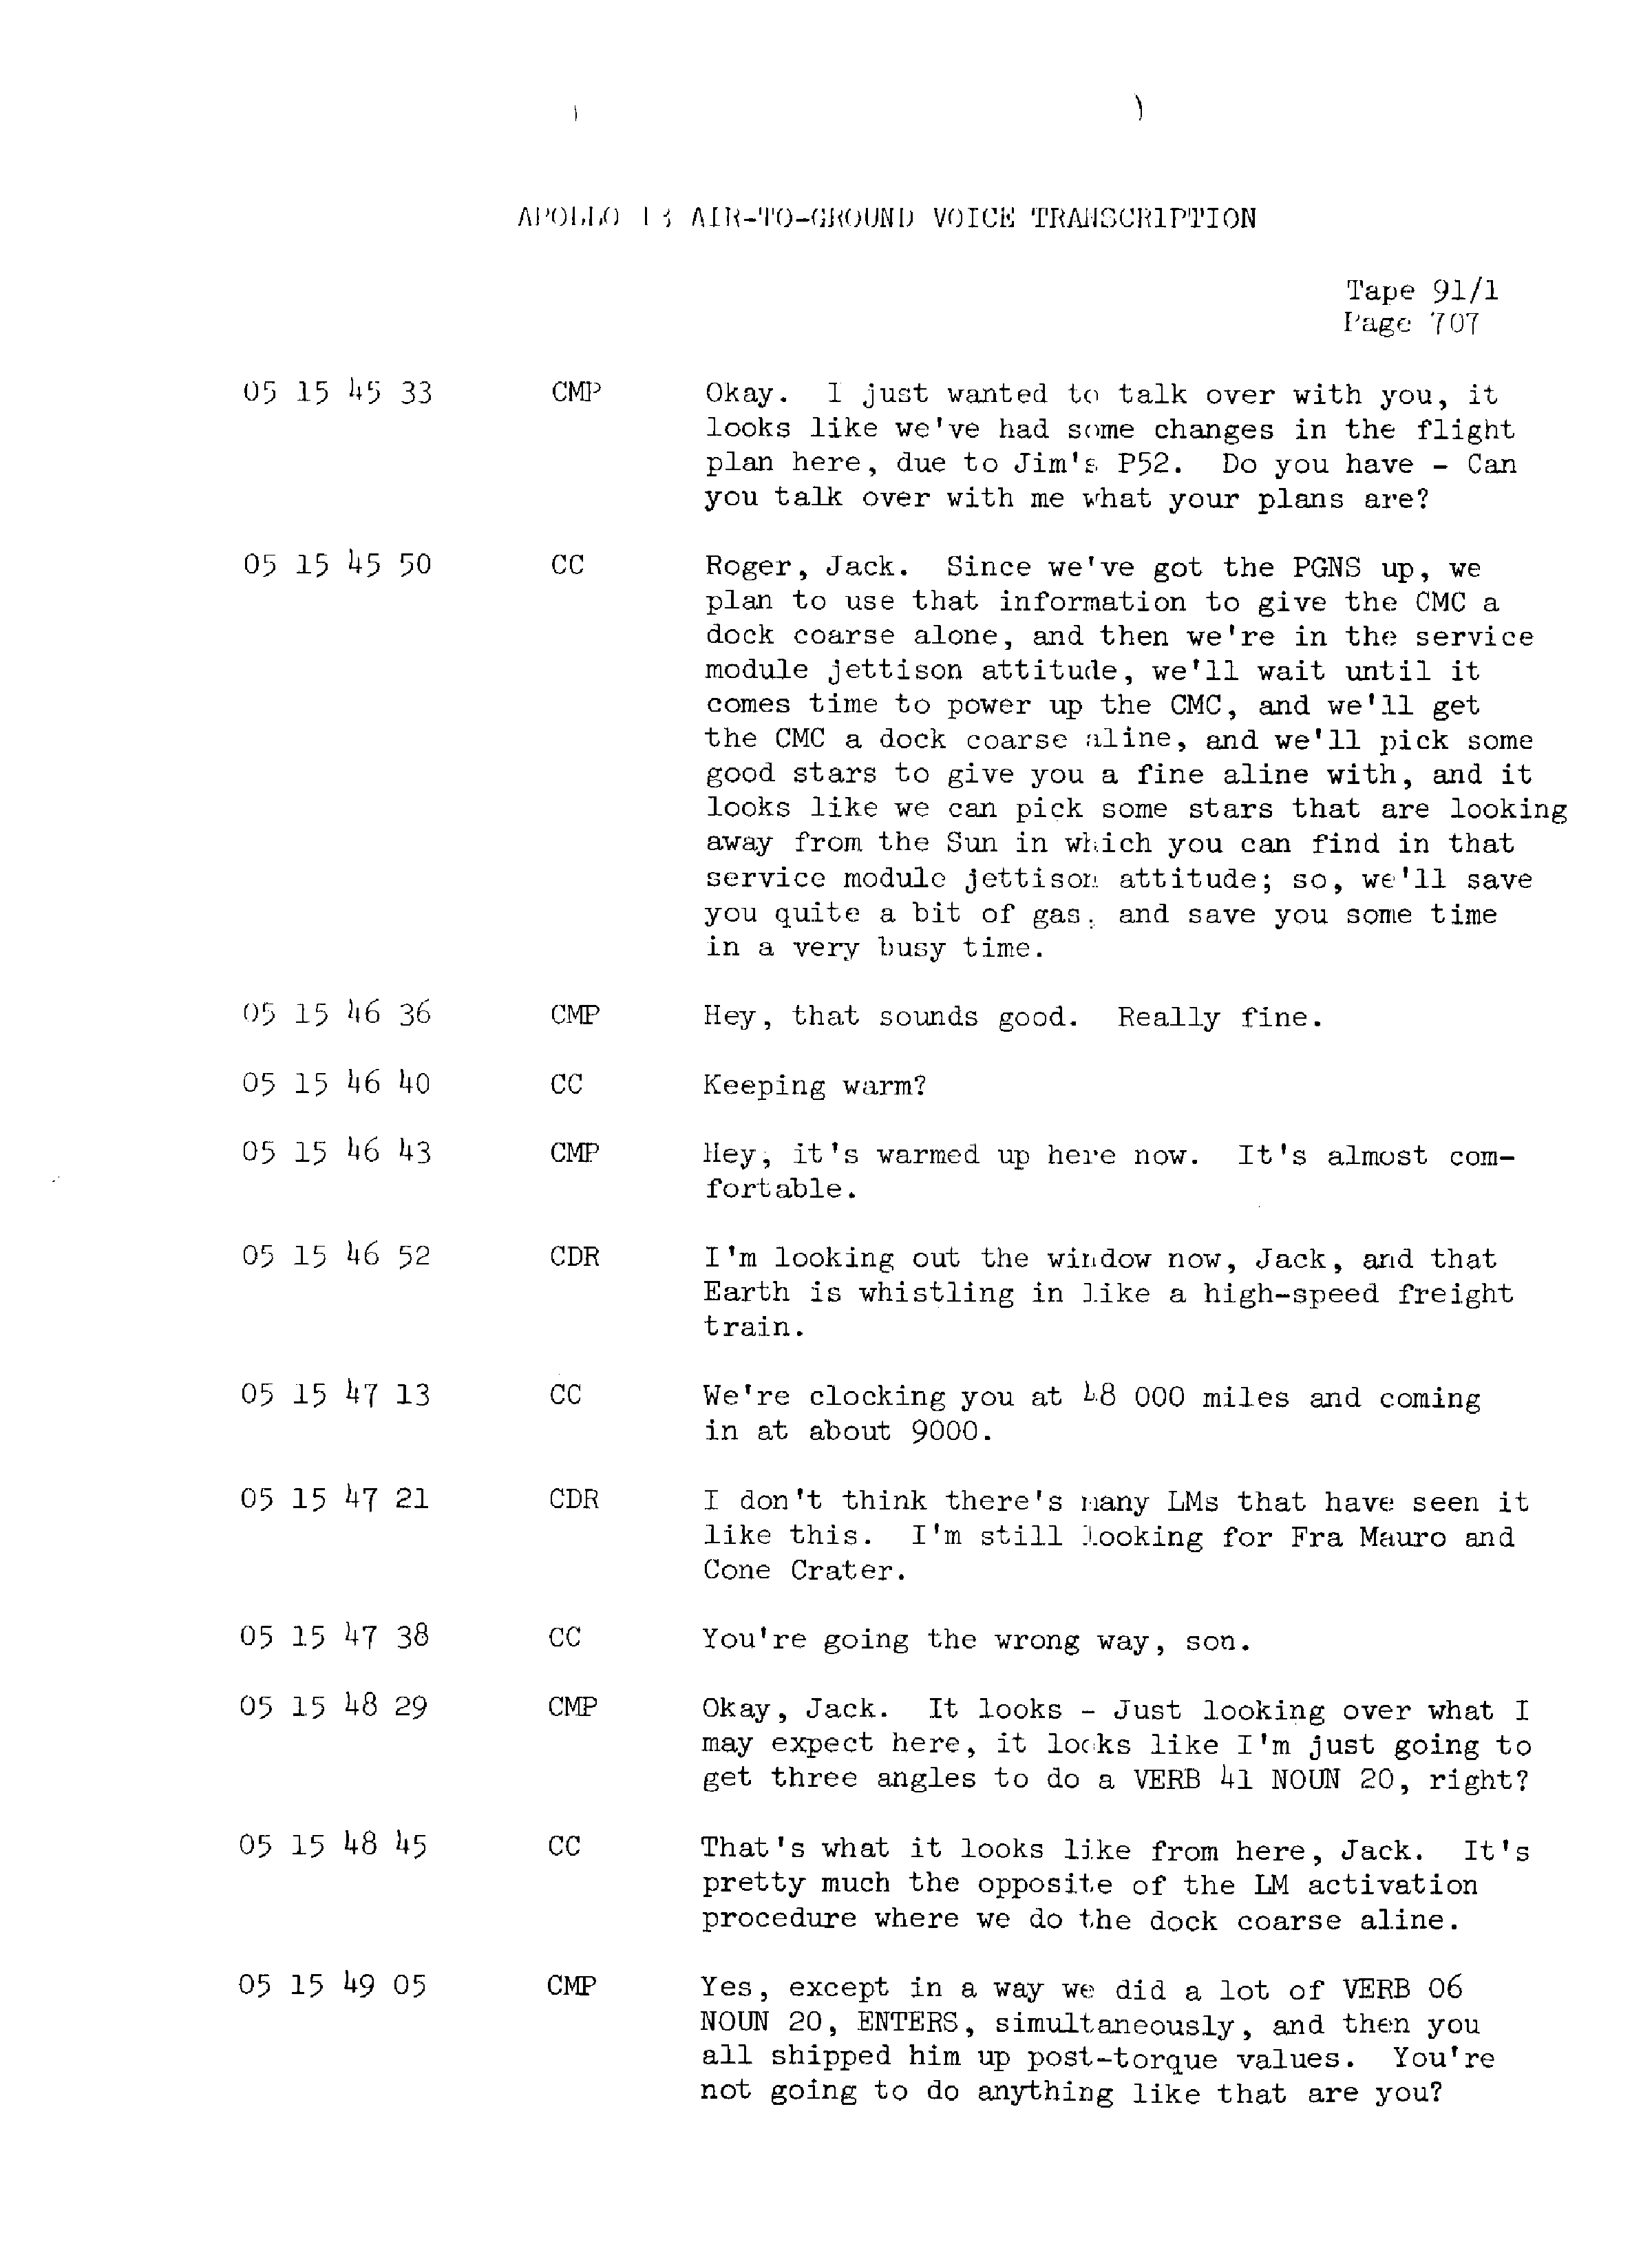 Page 714 of Apollo 13’s original transcript